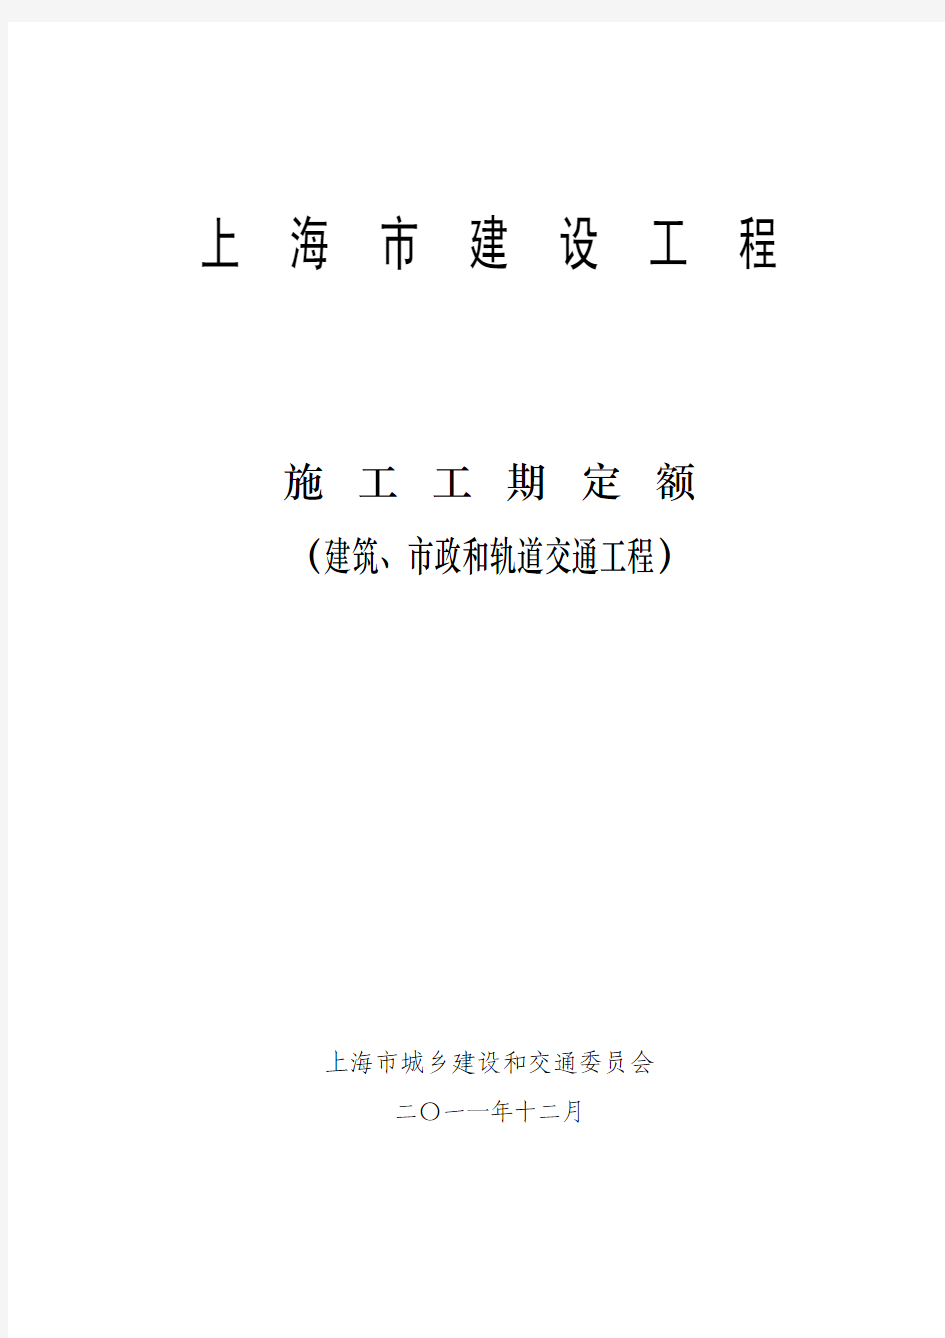 上海市工期定额(建筑、市政、轨交)2011